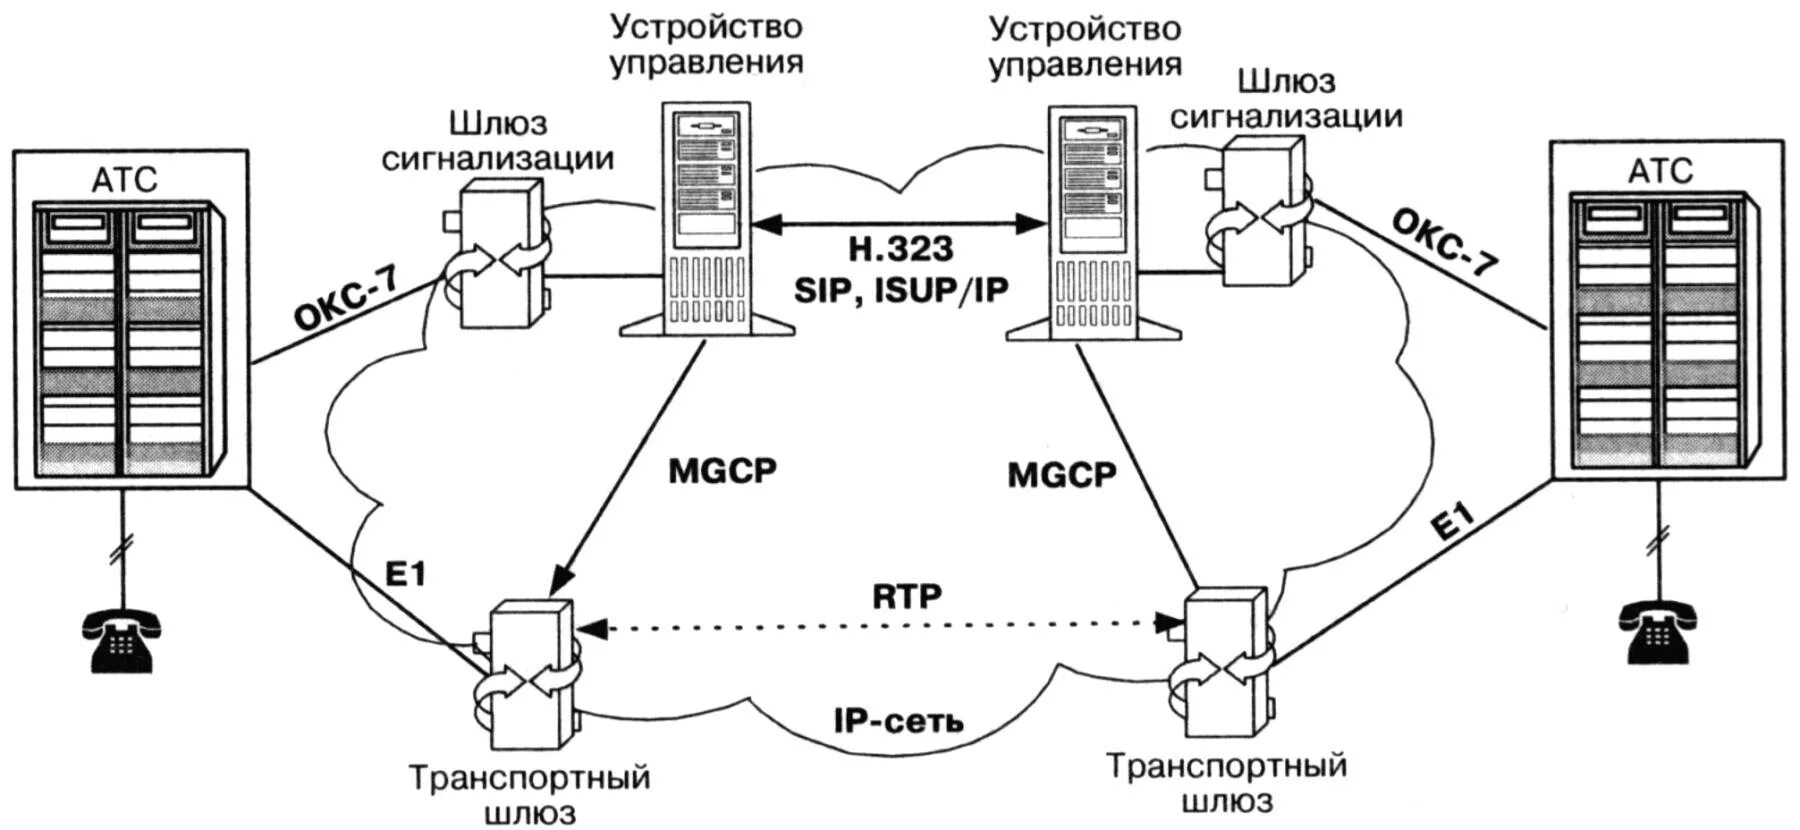 Шлюз интерфейсов. Протокол управления шлюзом Megaco/h.248. Протоколы управления MGCP, H.248. Шлюз IP телефонии схема. Обозначение VOIP шлюза на схеме.